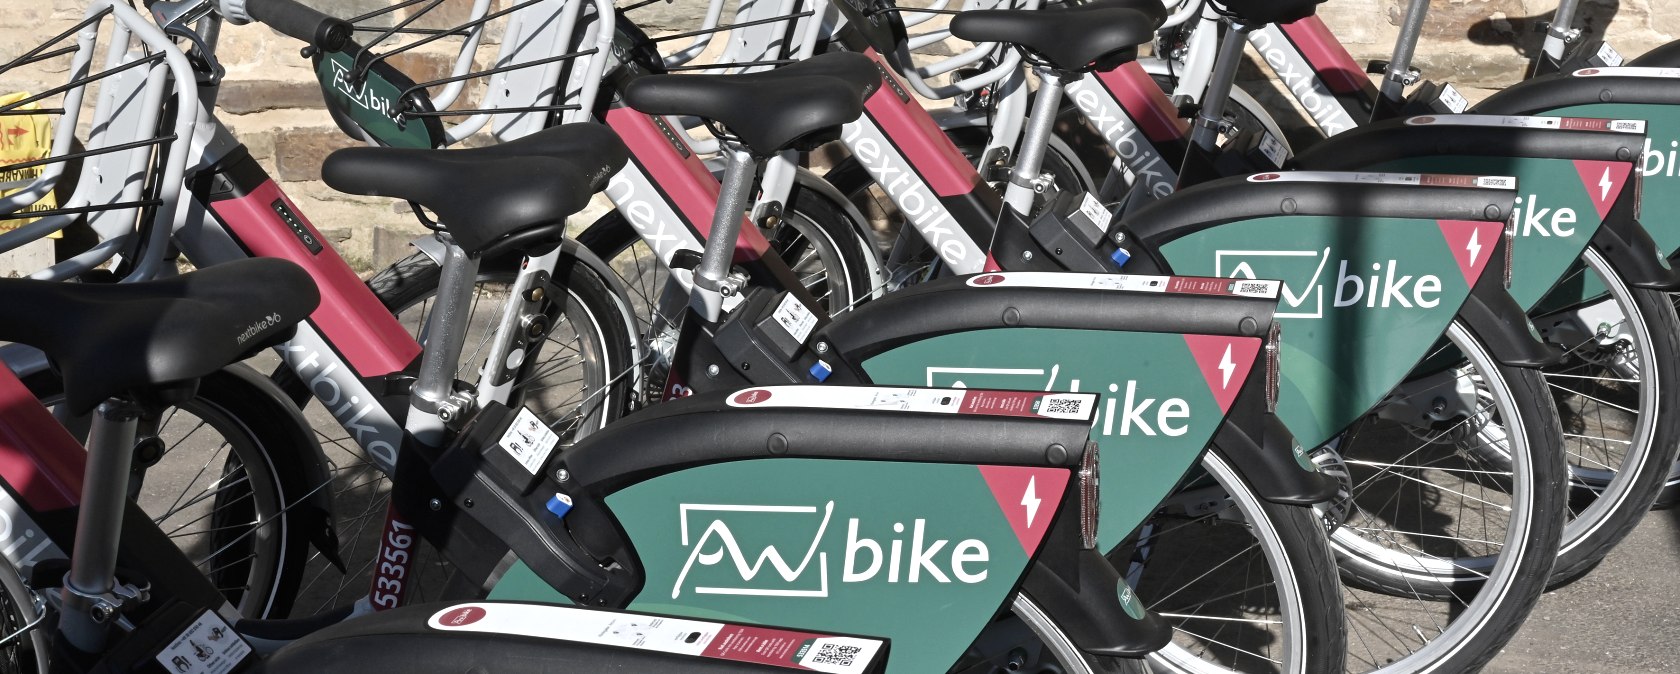 sechs E-Bikes in einer Reihe mit dem Logo AW Bike 